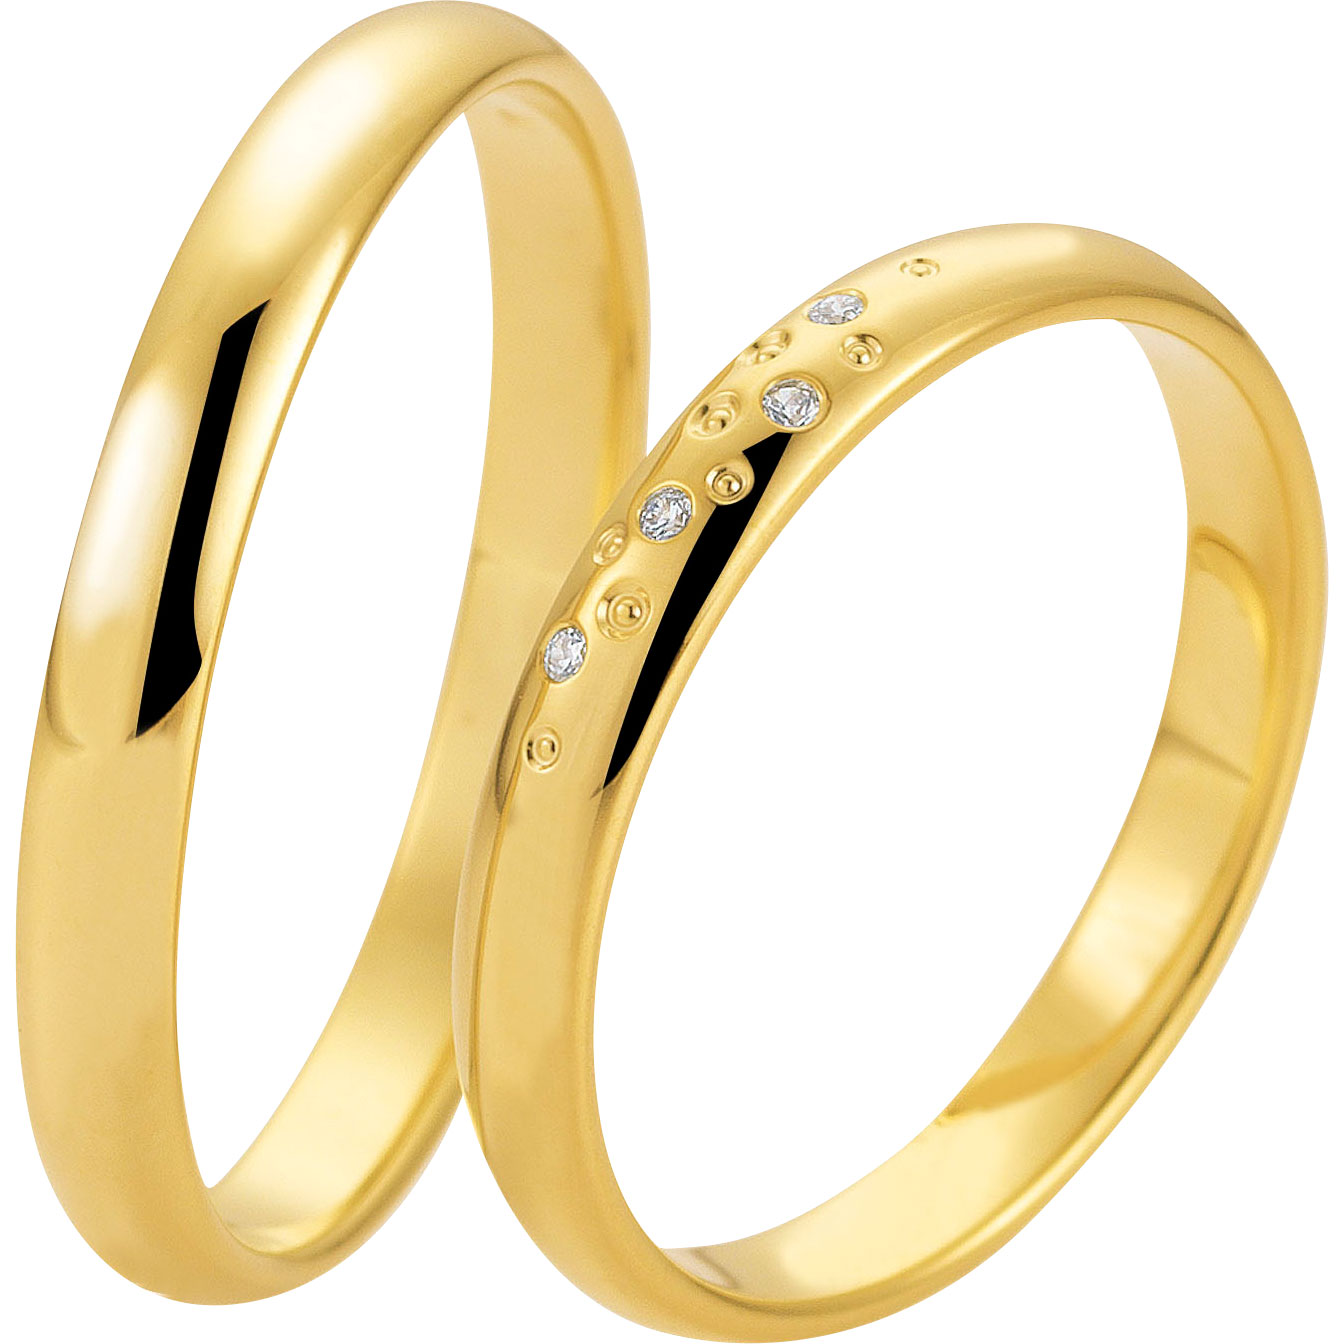 나만의 맞춤 반지 디자인과 맞춤 제작된 18k 금도금 실버 반지를 만나보세요.